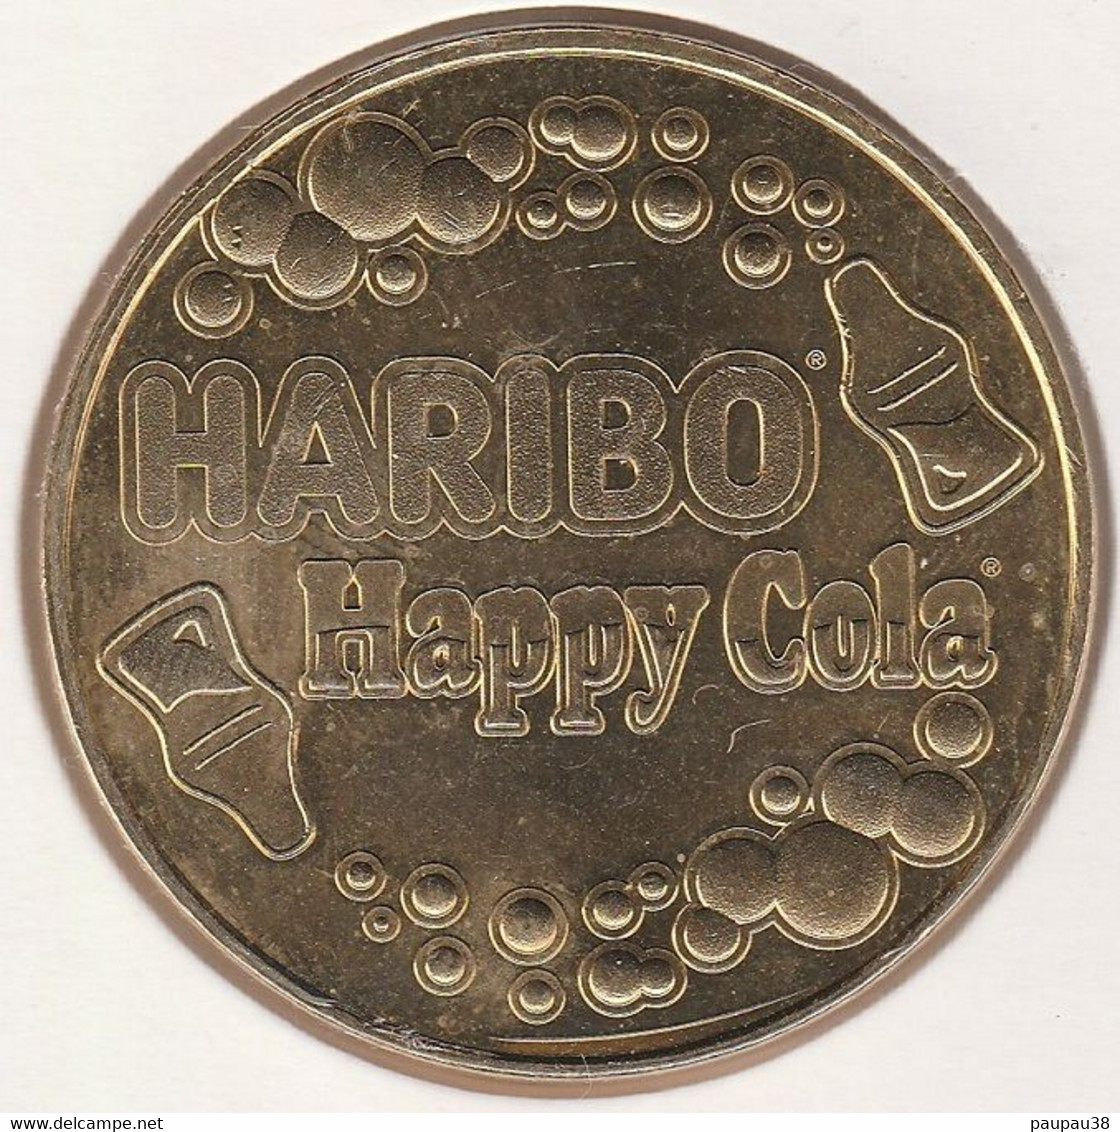 MONNAIE DE PARIS 2017 - 30 UZES Musée Du Bonbon Haribo - Haribo - Happy Cola - 2017